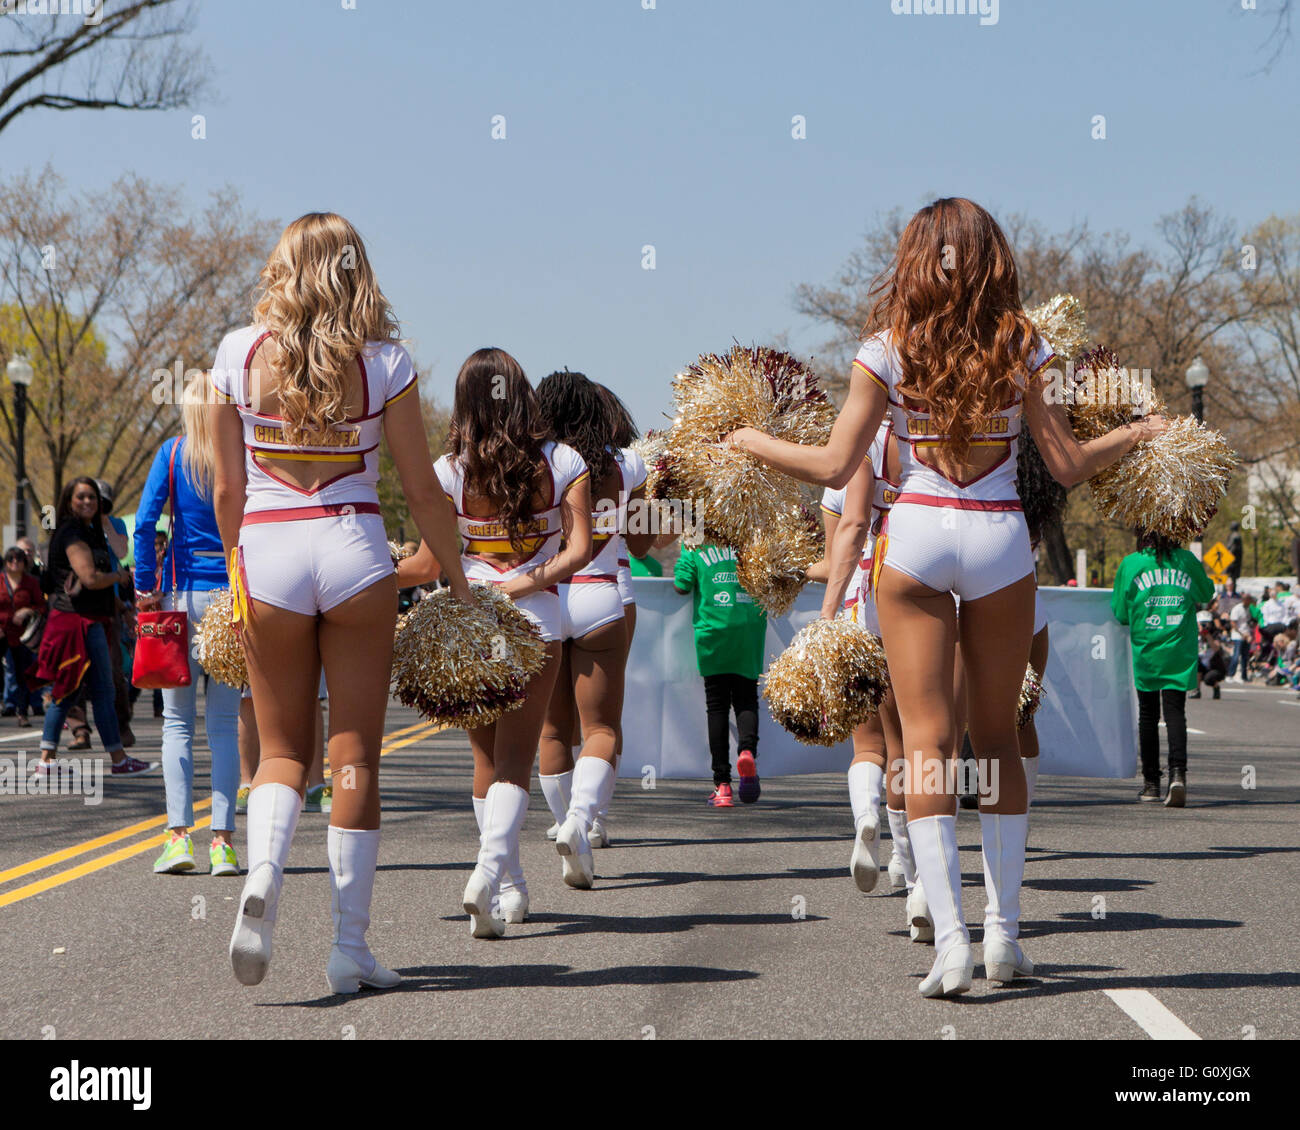 Washington Redskins Cheerleader während einer Parade - Washington, DC USA Stockfoto